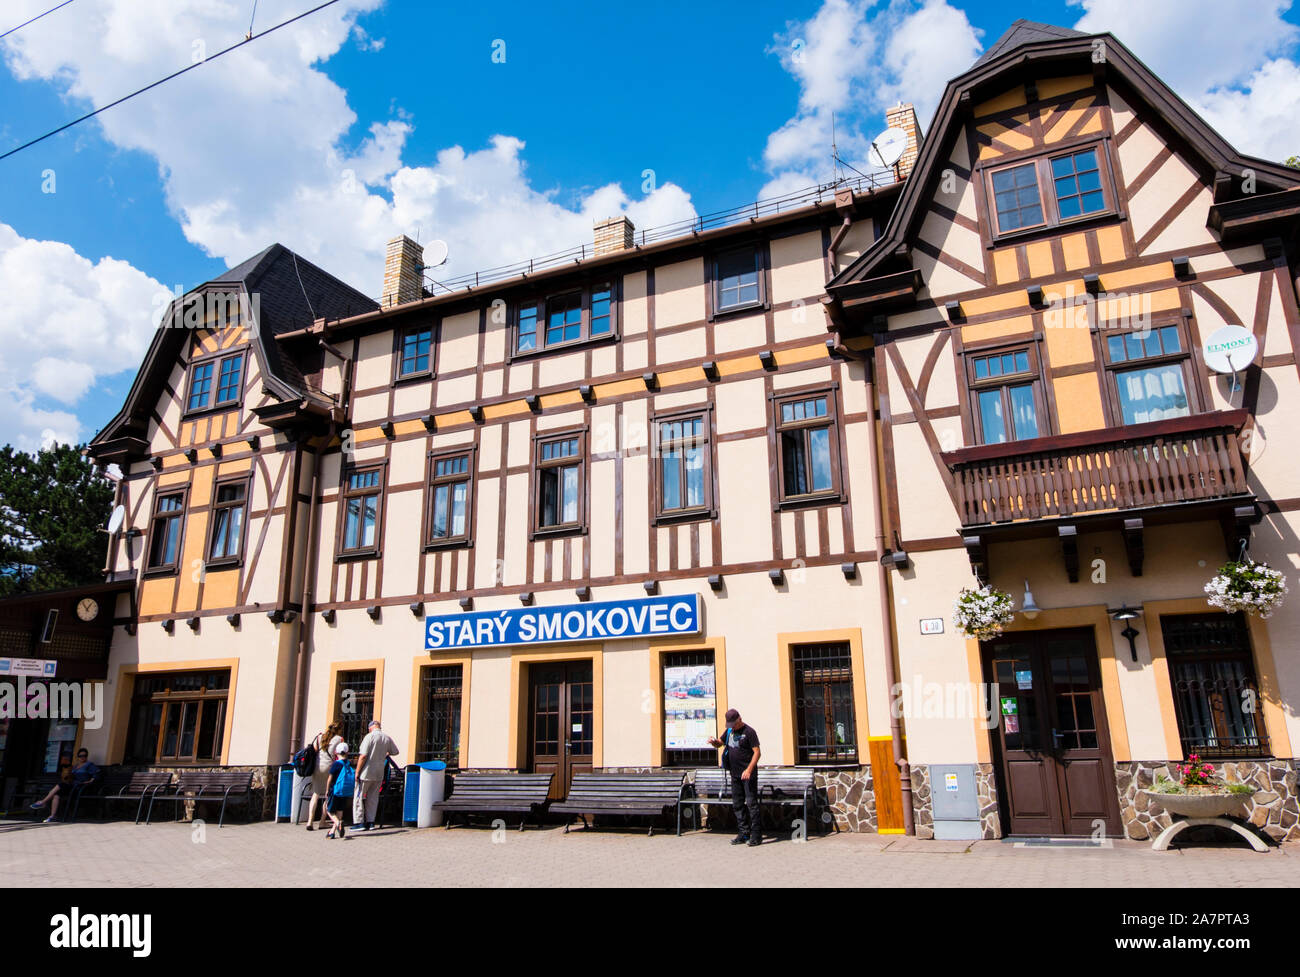 Railway station, Stary Smokovec, Vysoke Tatry, Slovakia Stock Photo